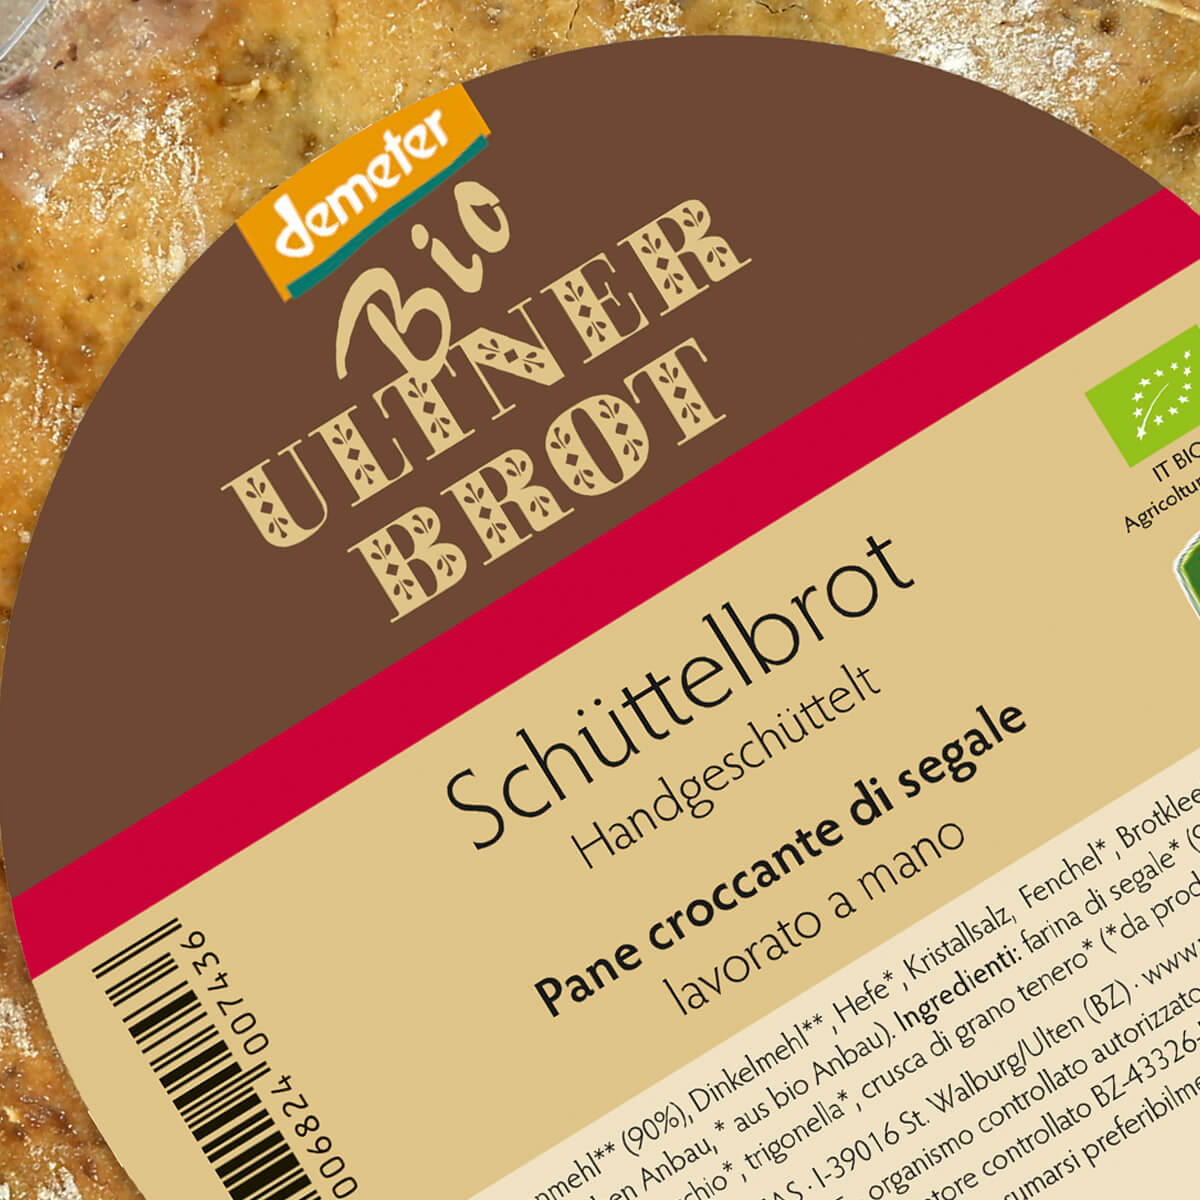 Ultner Brot Produktetikette gestaltet von zepra.it